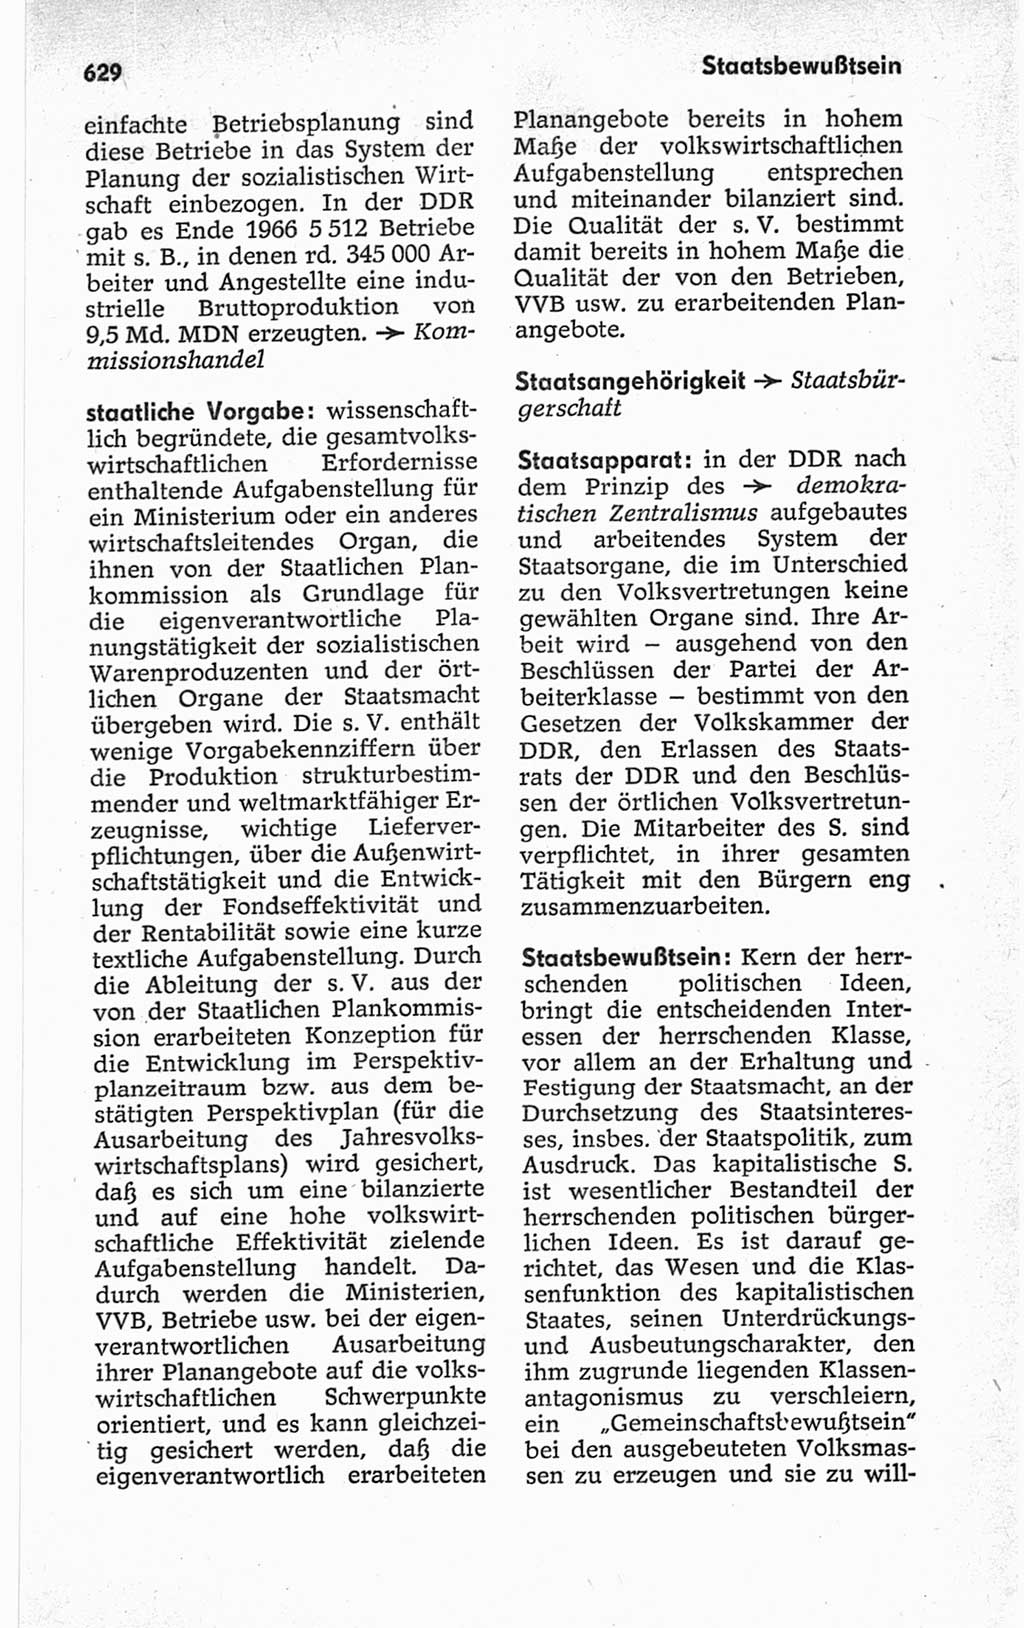 Kleines politisches Wörterbuch [Deutsche Demokratische Republik (DDR)] 1967, Seite 629 (Kl. pol. Wb. DDR 1967, S. 629)